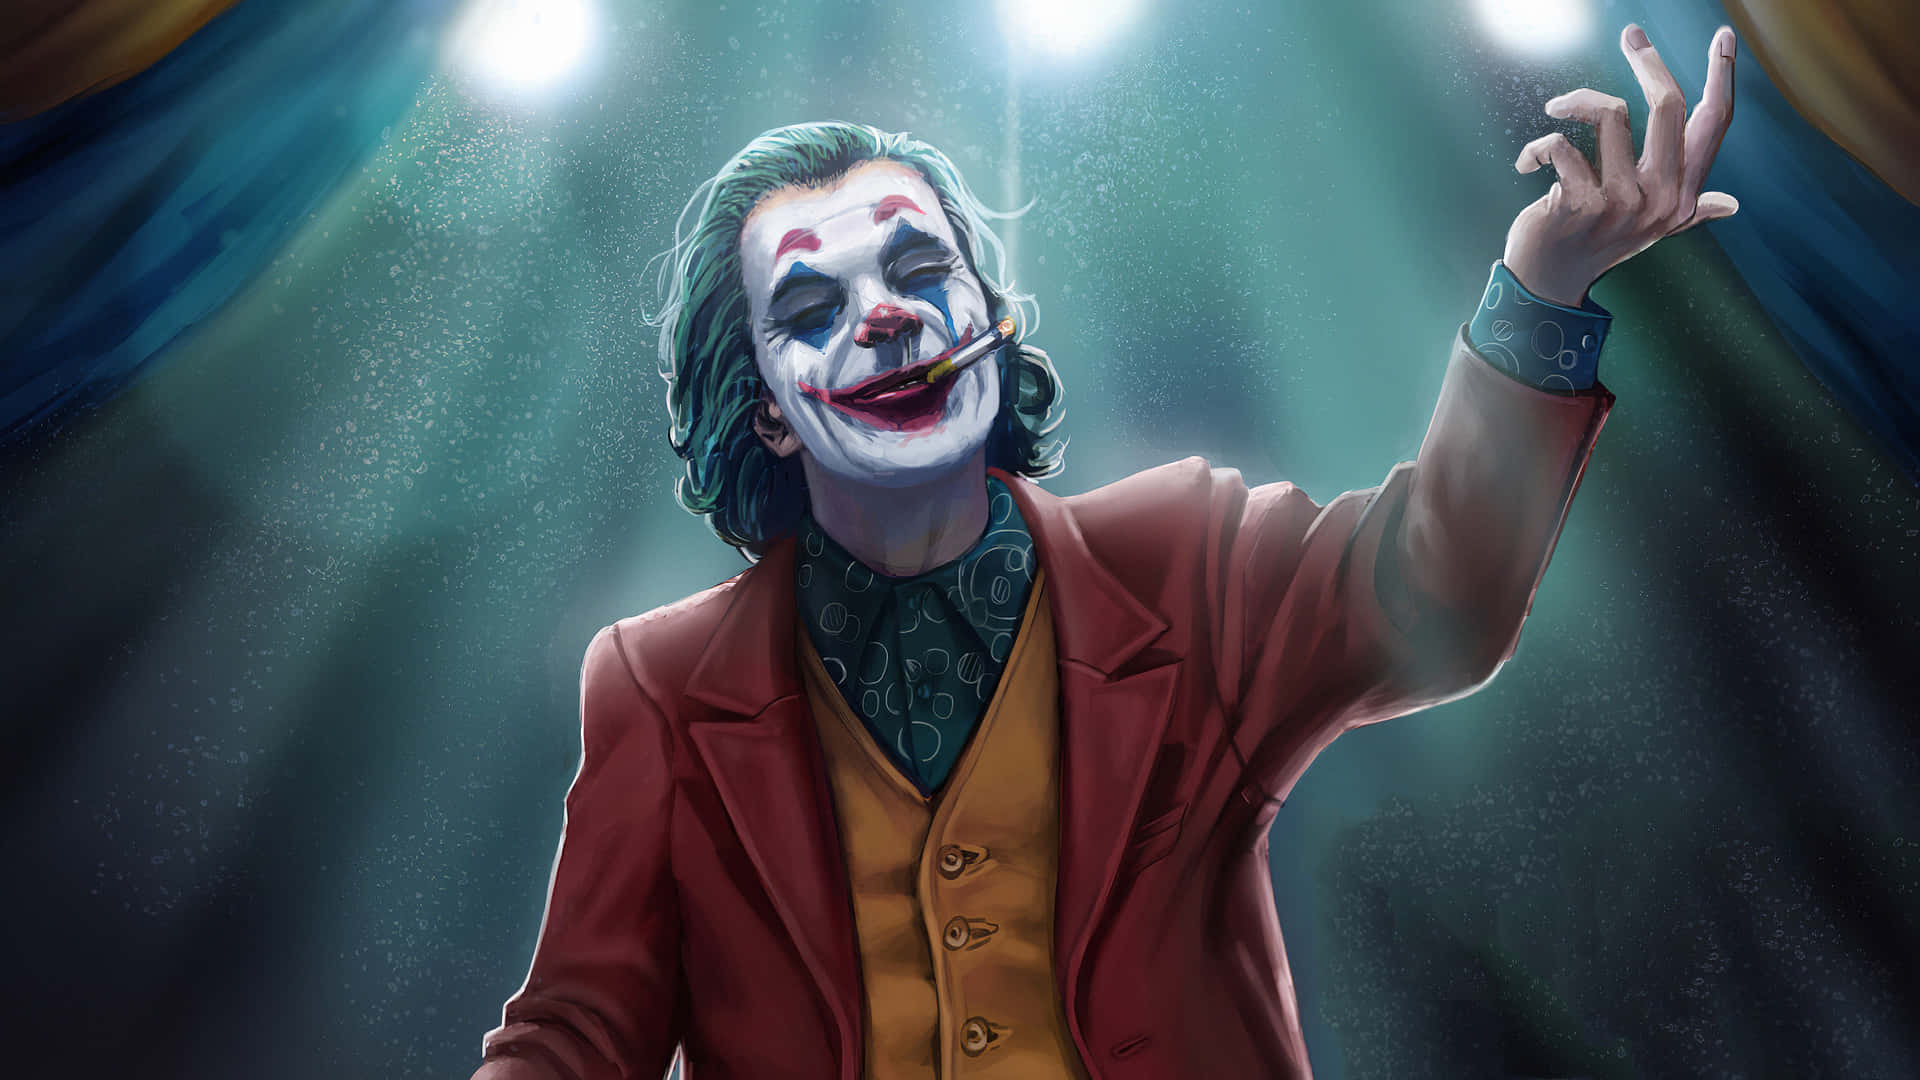 Sumérgeteen El Lado Oscuro Con La Icónica Máscara Del Joker.